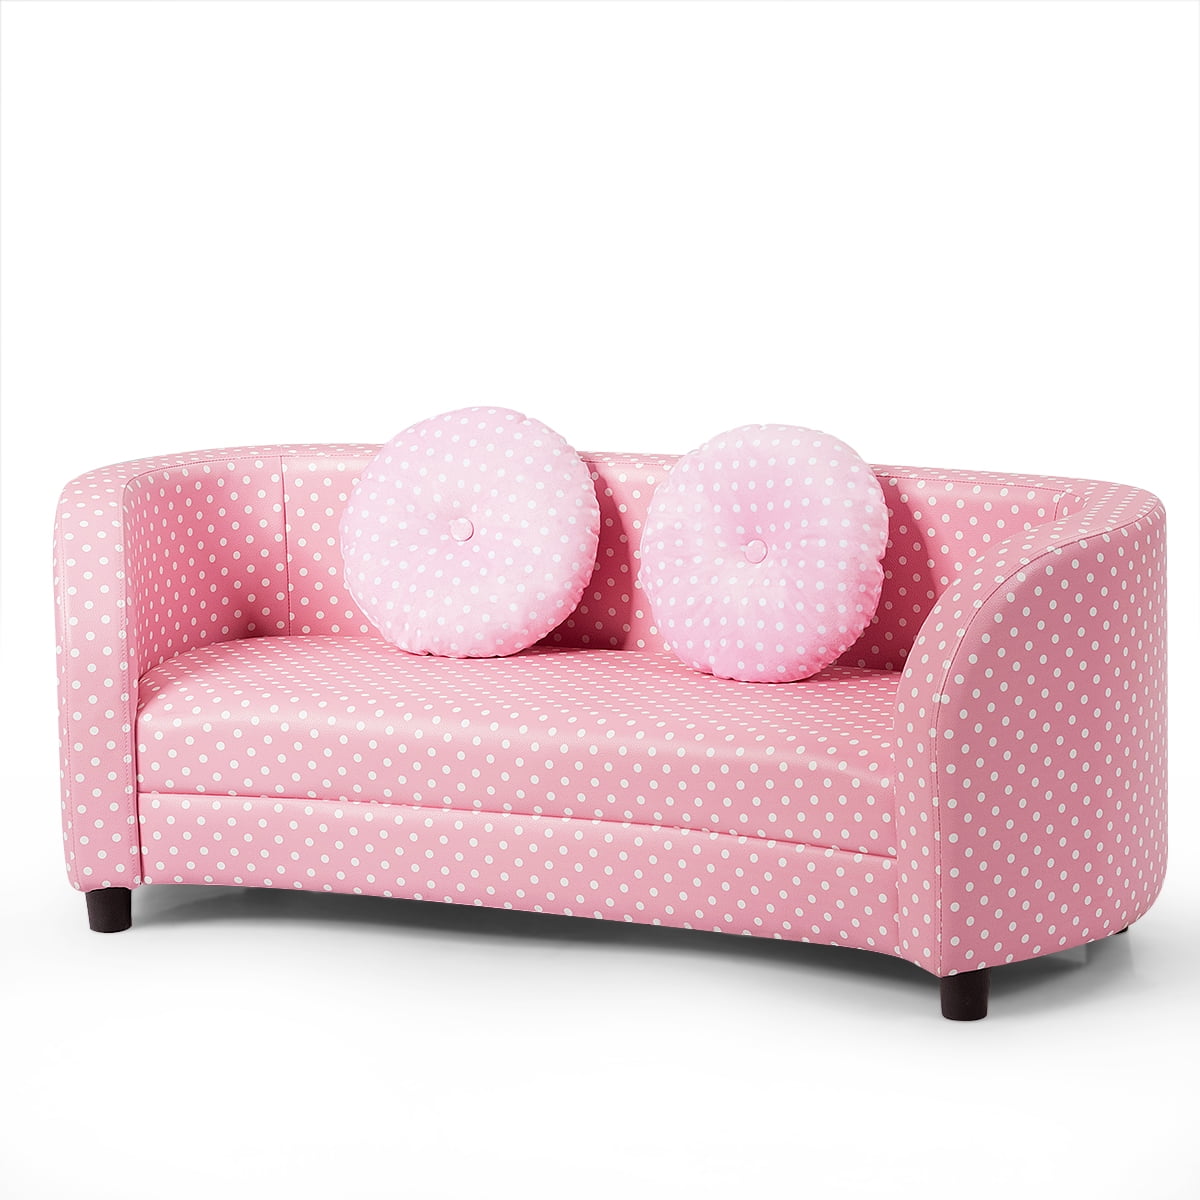 kids sofa pink